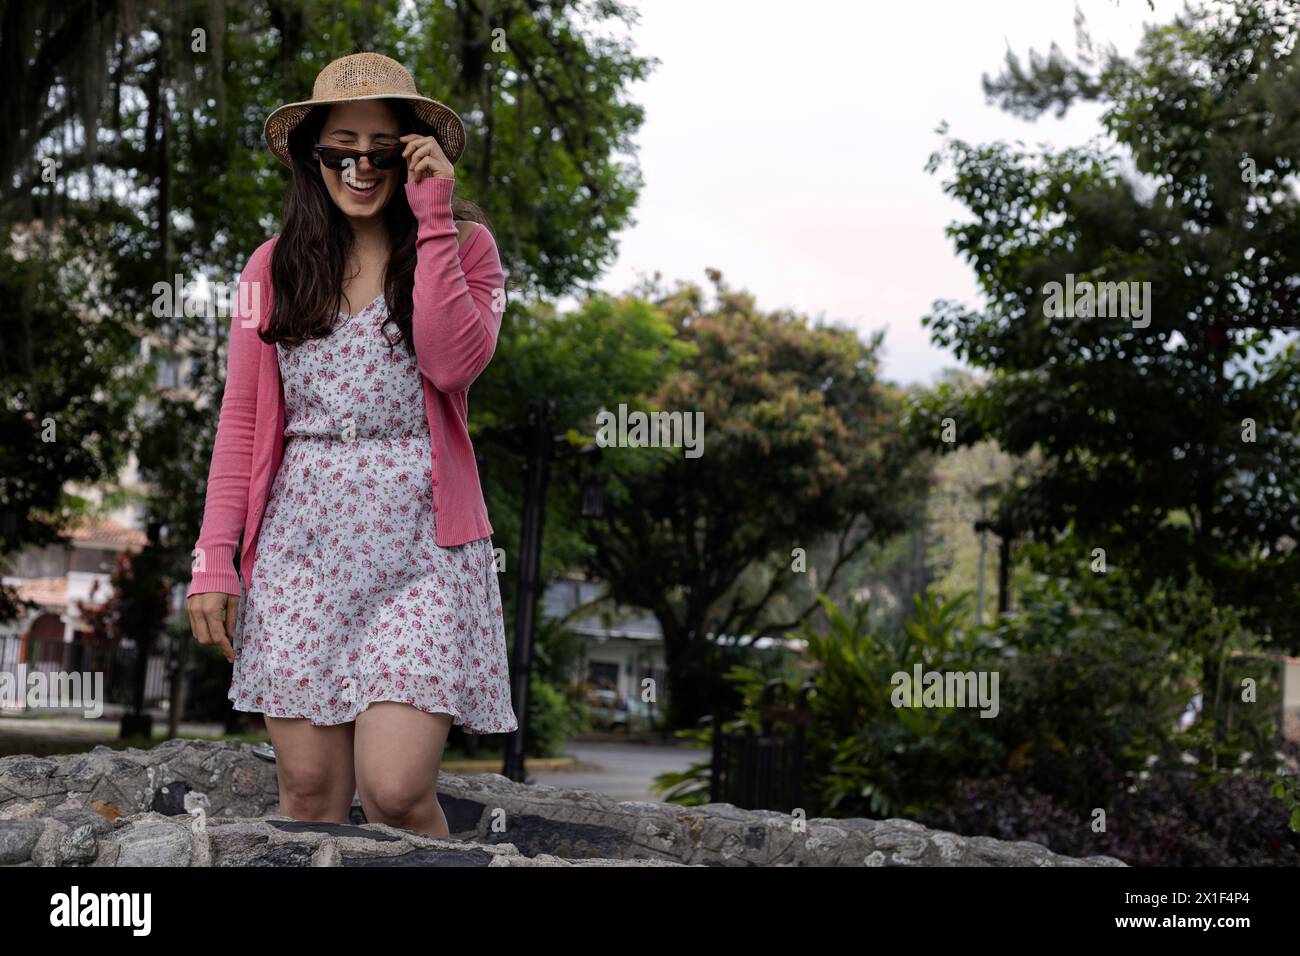 Jeune femme latino-américaine (33 ans) se tient avec une attitude positive regardant par-dessus ses lunettes. Porter un chapeau, une robe de fleur et un pull rose. Concept de ressort. Banque D'Images